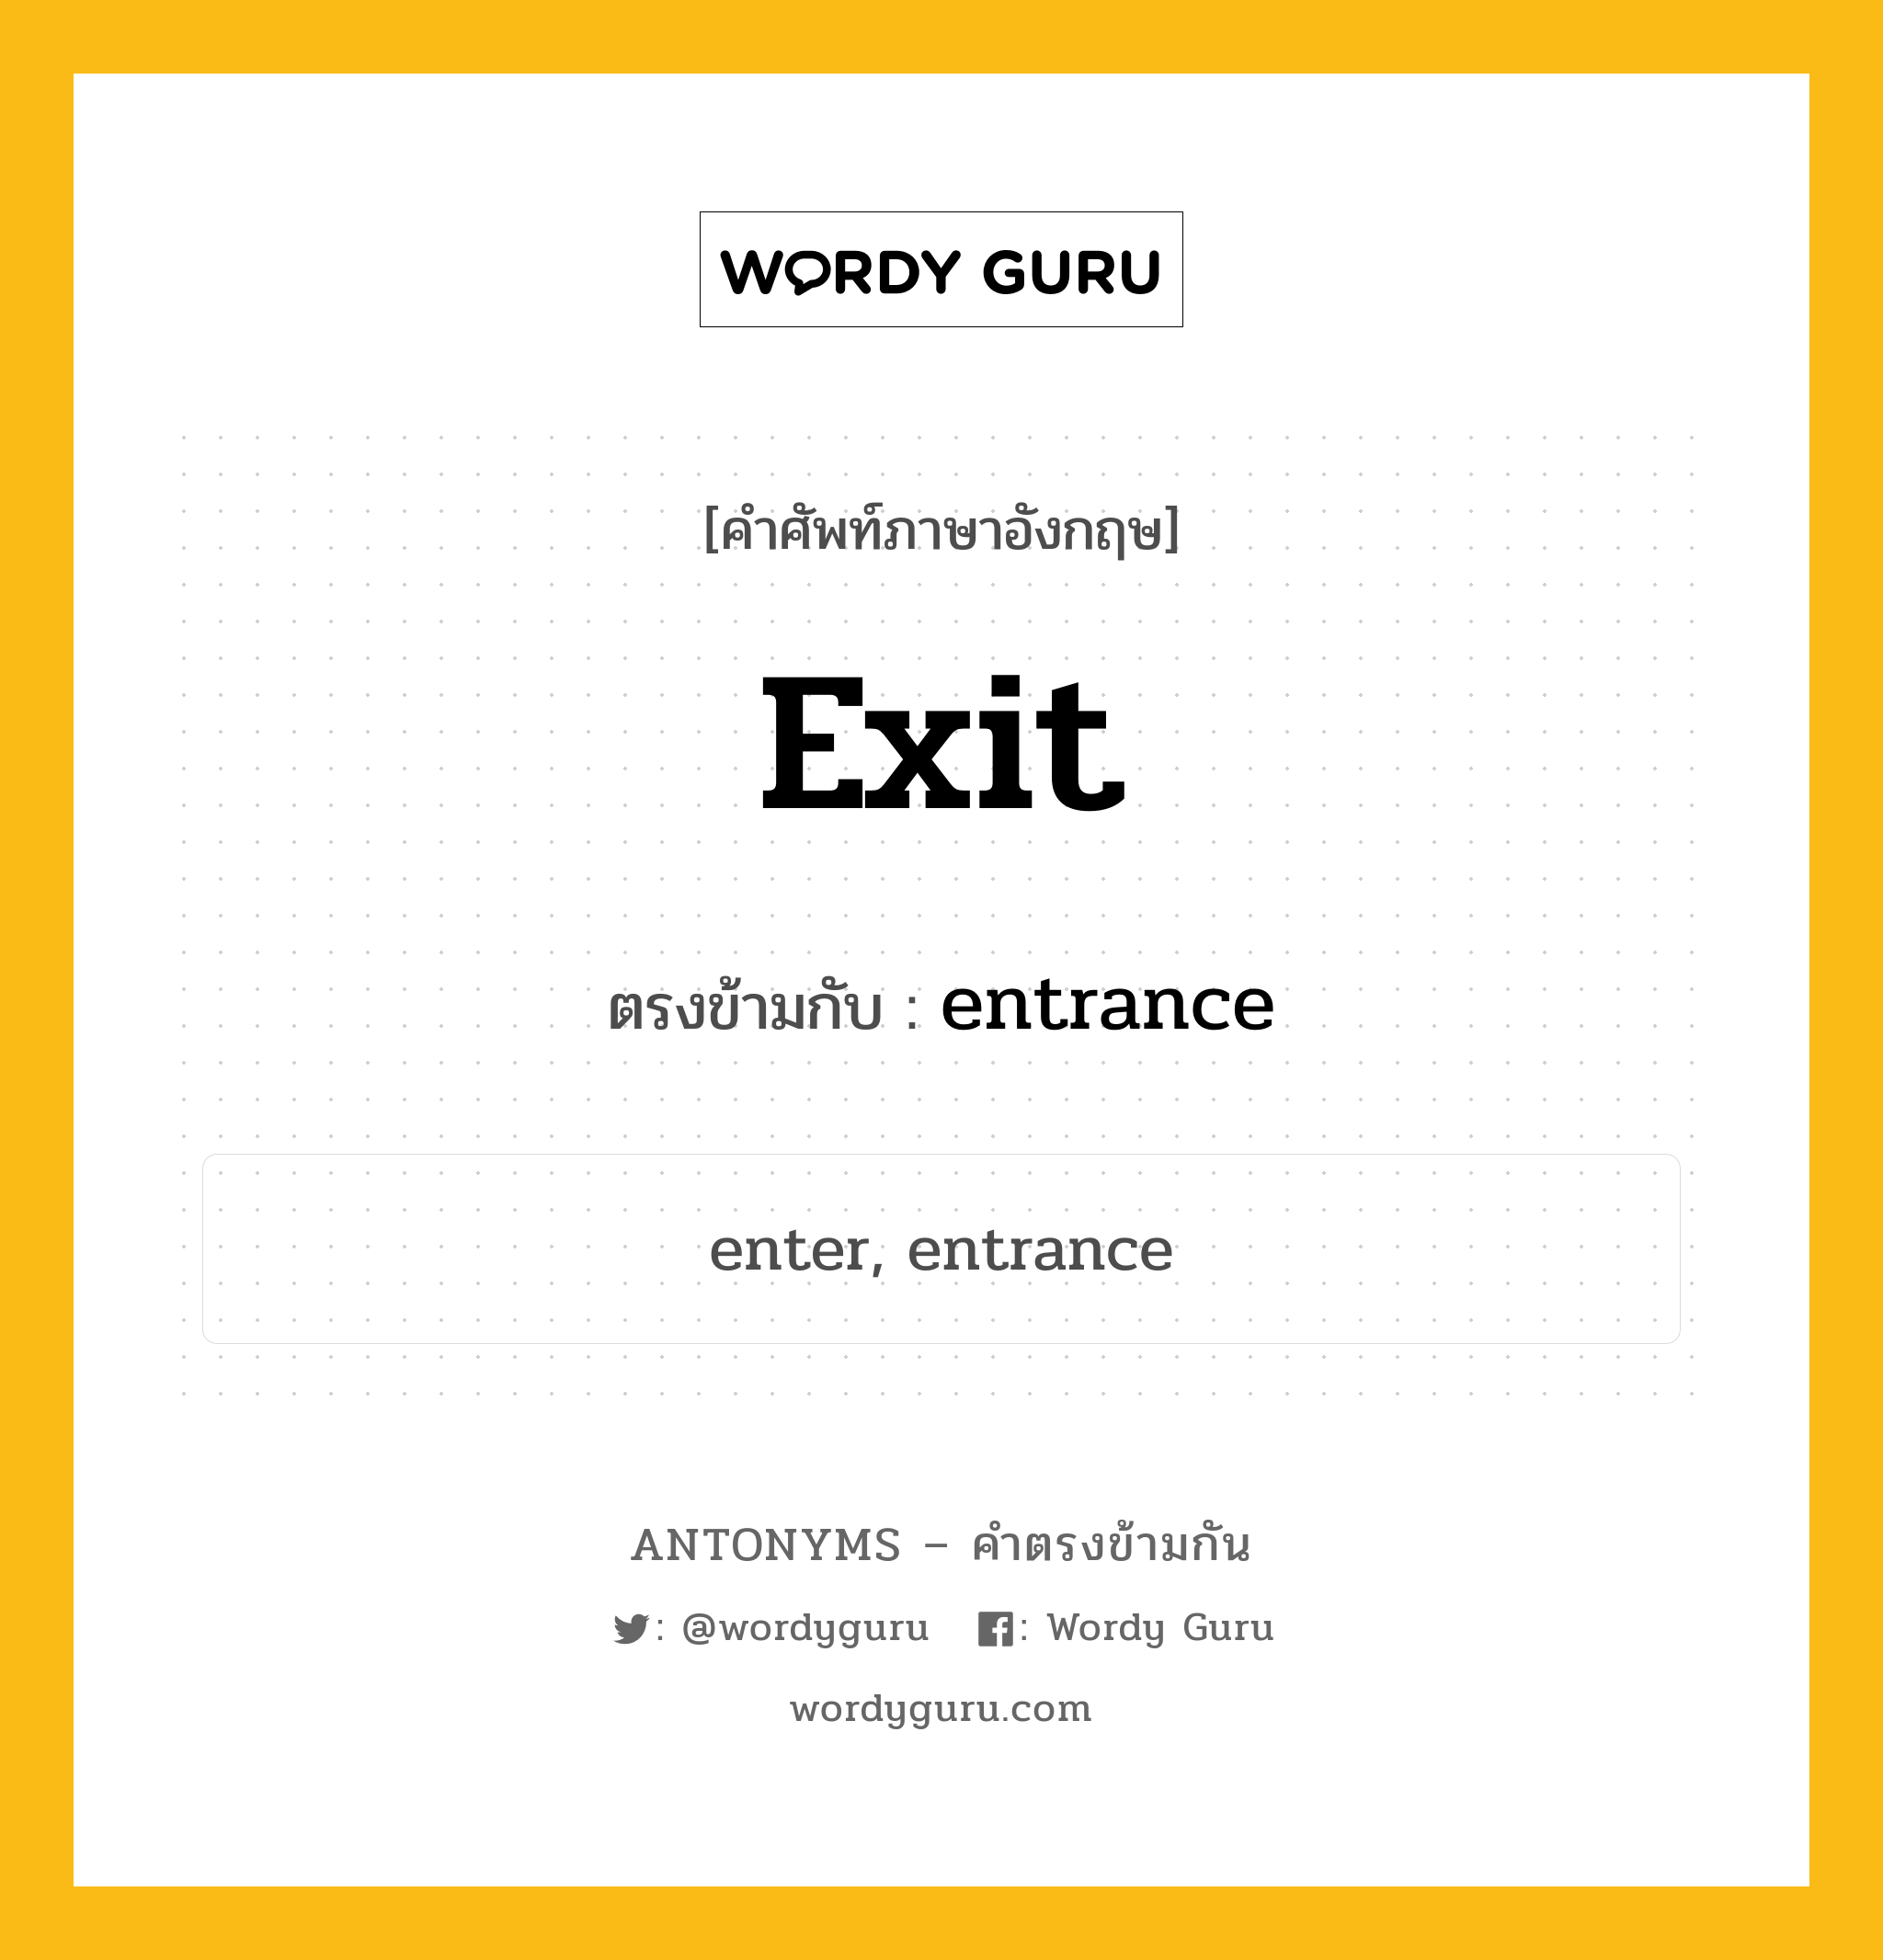 exit เป็นคำตรงข้ามกับคำไหนบ้าง?, คำศัพท์ภาษาอังกฤษ exit ตรงข้ามกับ entrance หมวด entrance